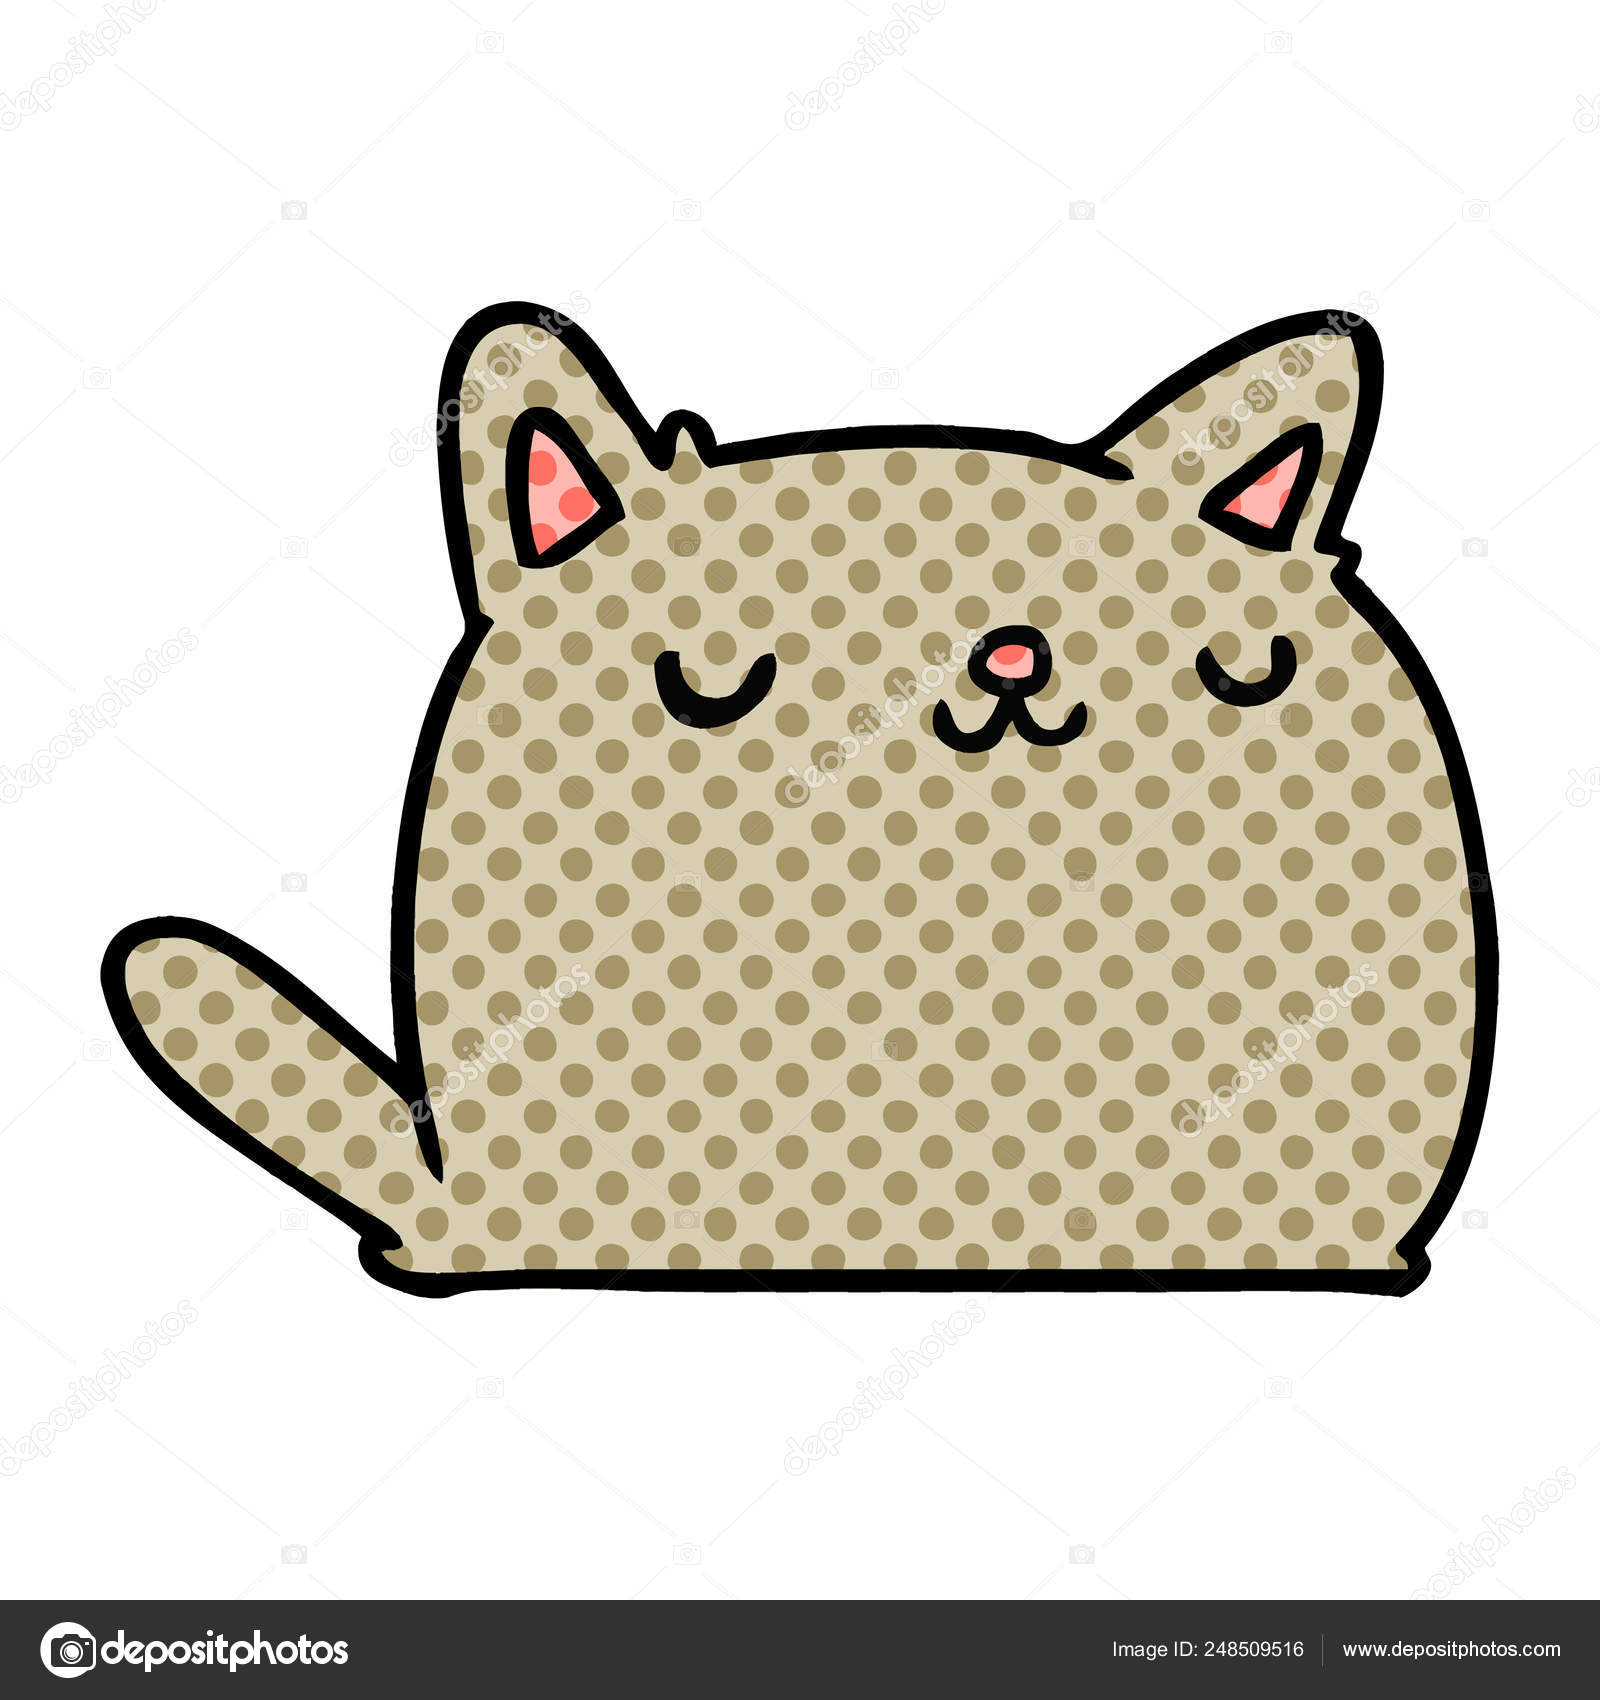 可愛い可愛い猫の漫画イラスト ストックベクター C Lineartestpilot